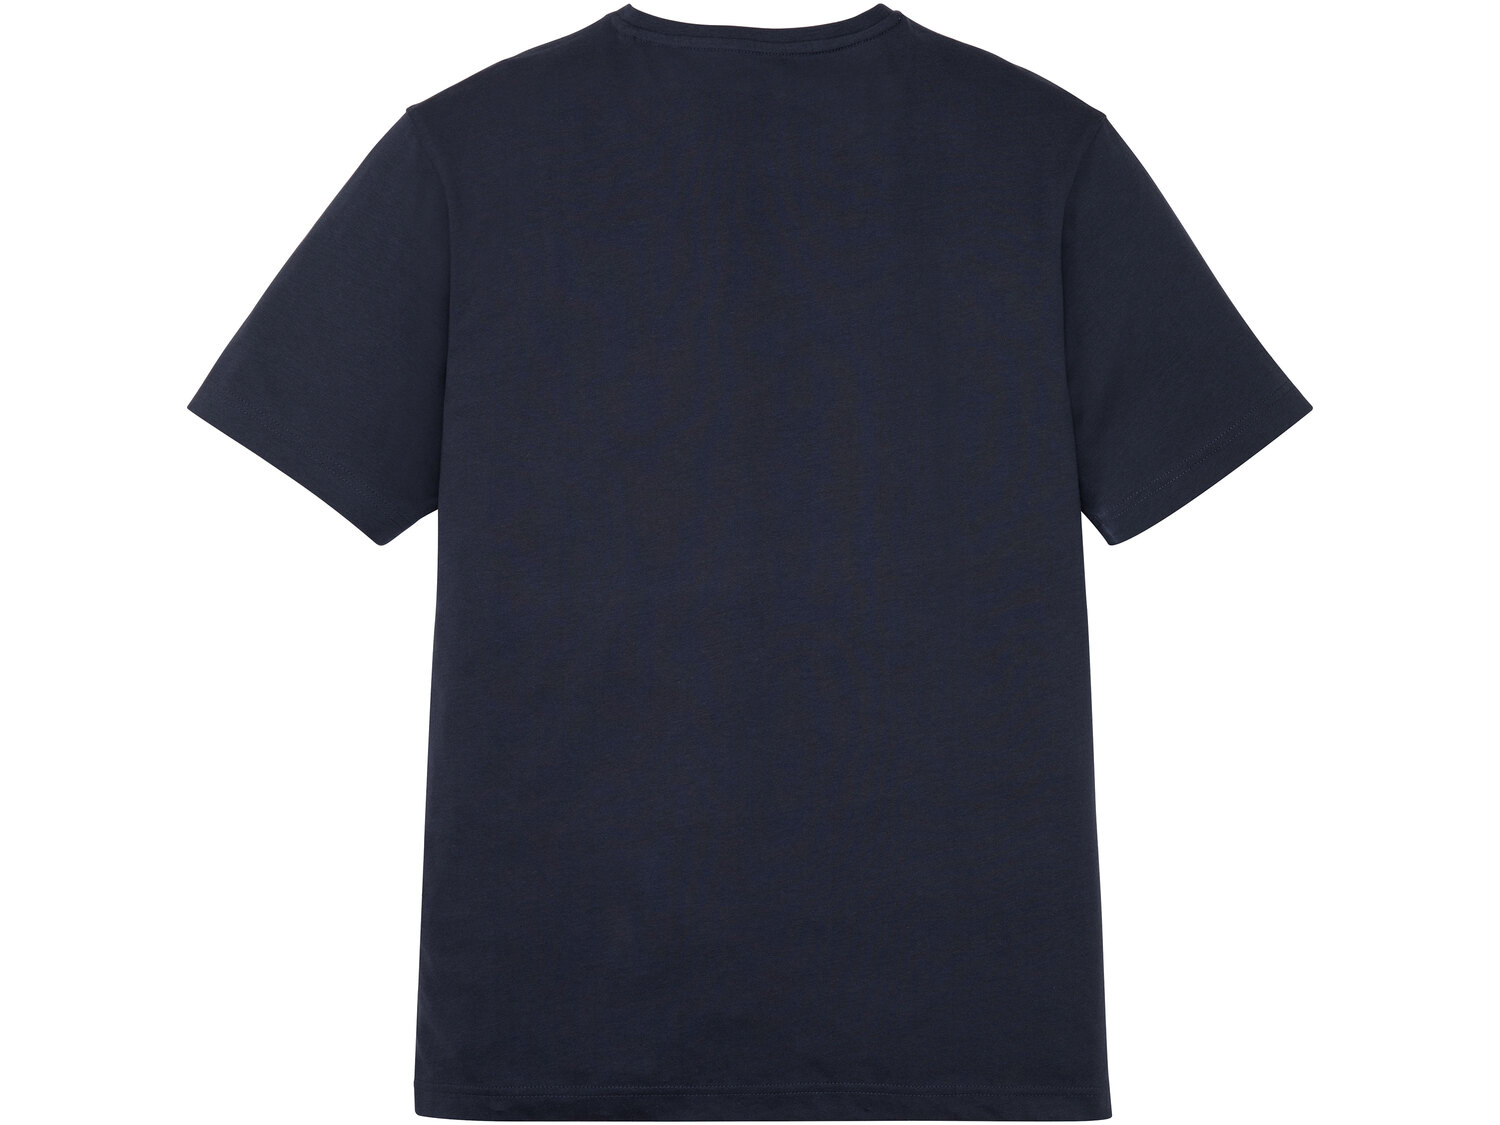 Piżama męska , cena 34,99 PLN 
- 100% bawełny
- rozmiary: M-XL
Dostępne rozmiary

Opis

- ...